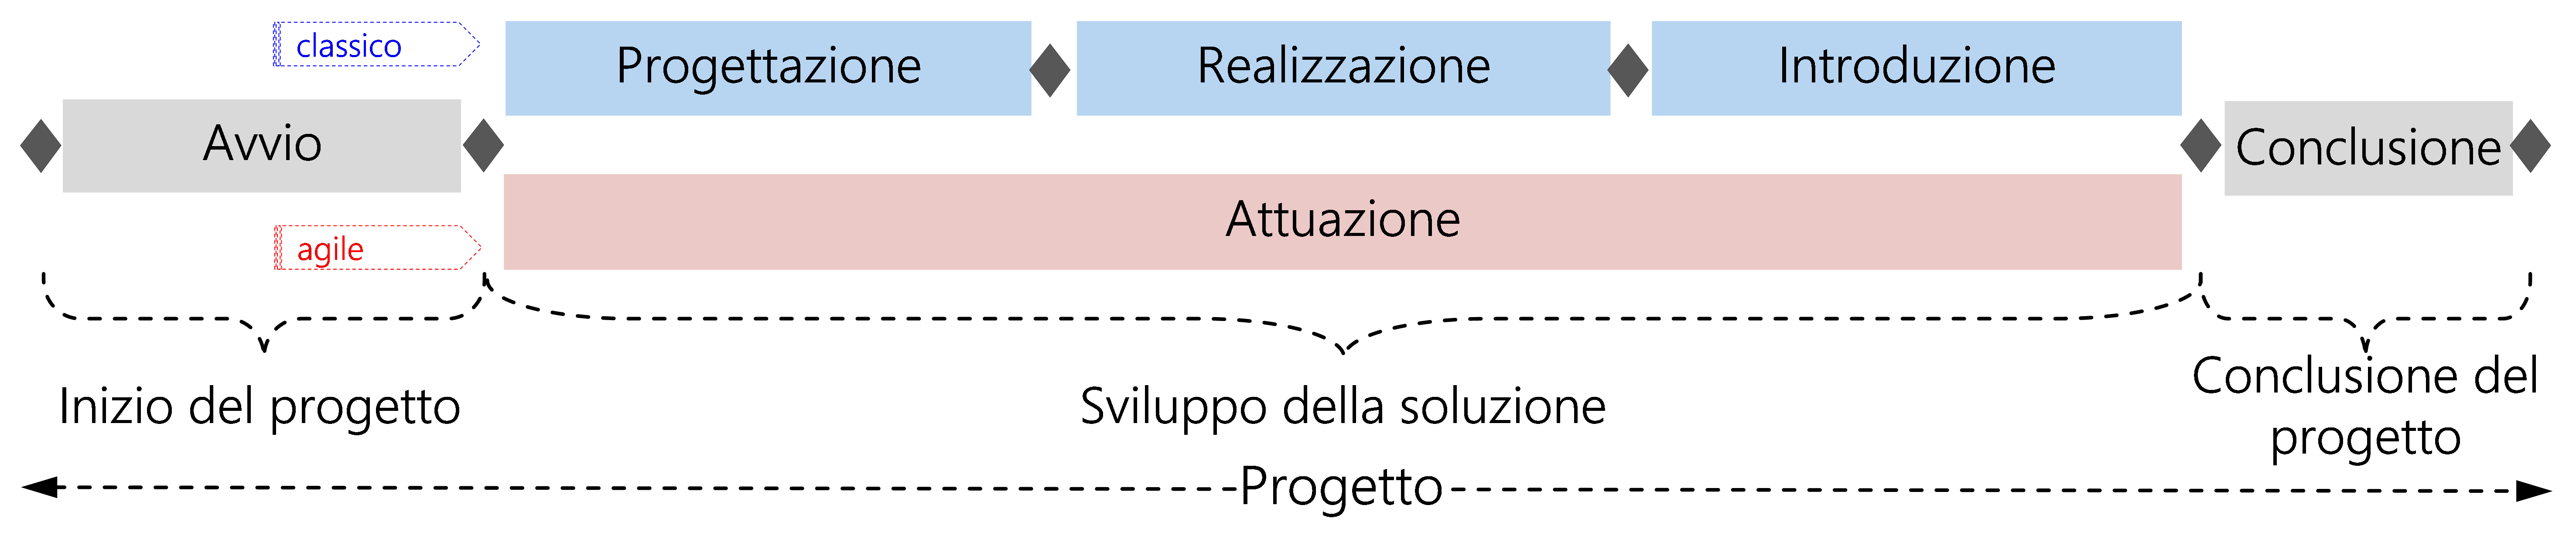 Figura 5: ciclo di vita dei progetti HERMES con il modello a fasi nell'approccio classico e in quello agile